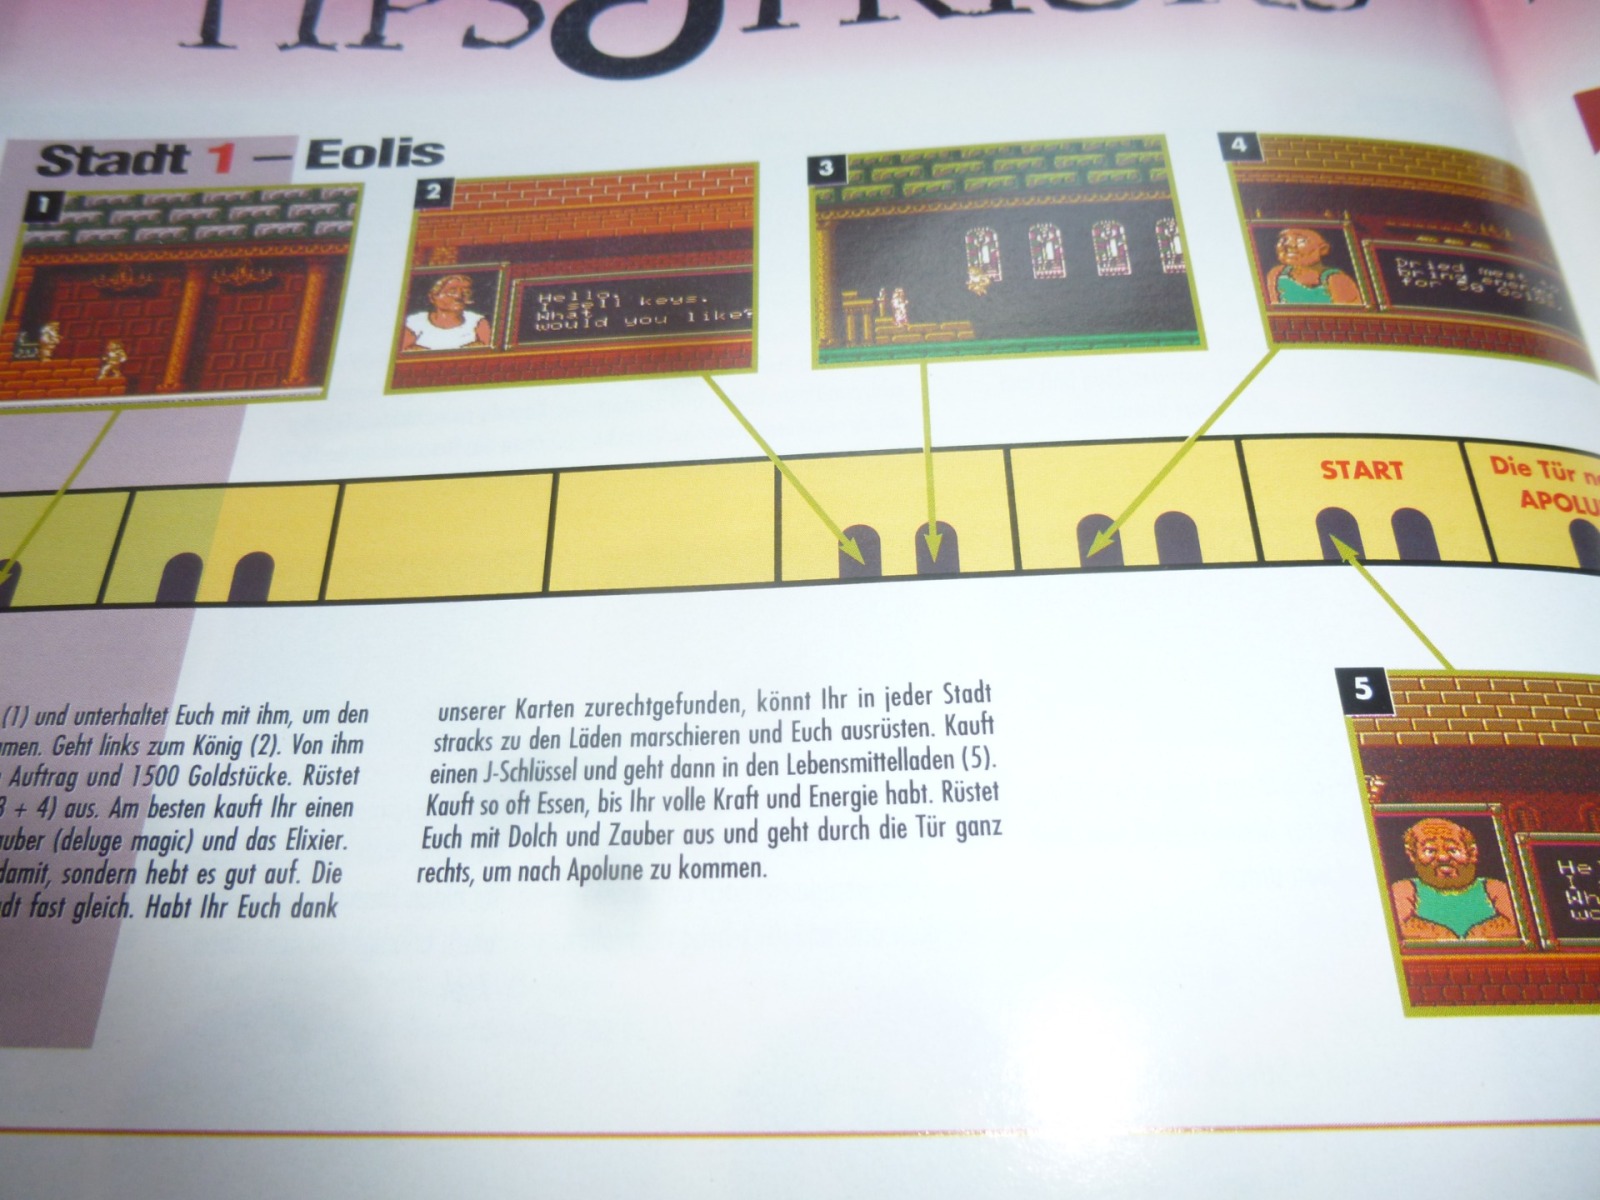 TOTAL Das unabhängige Magazin - 100% Nintendo - Ausgabe 7/93 1993 30